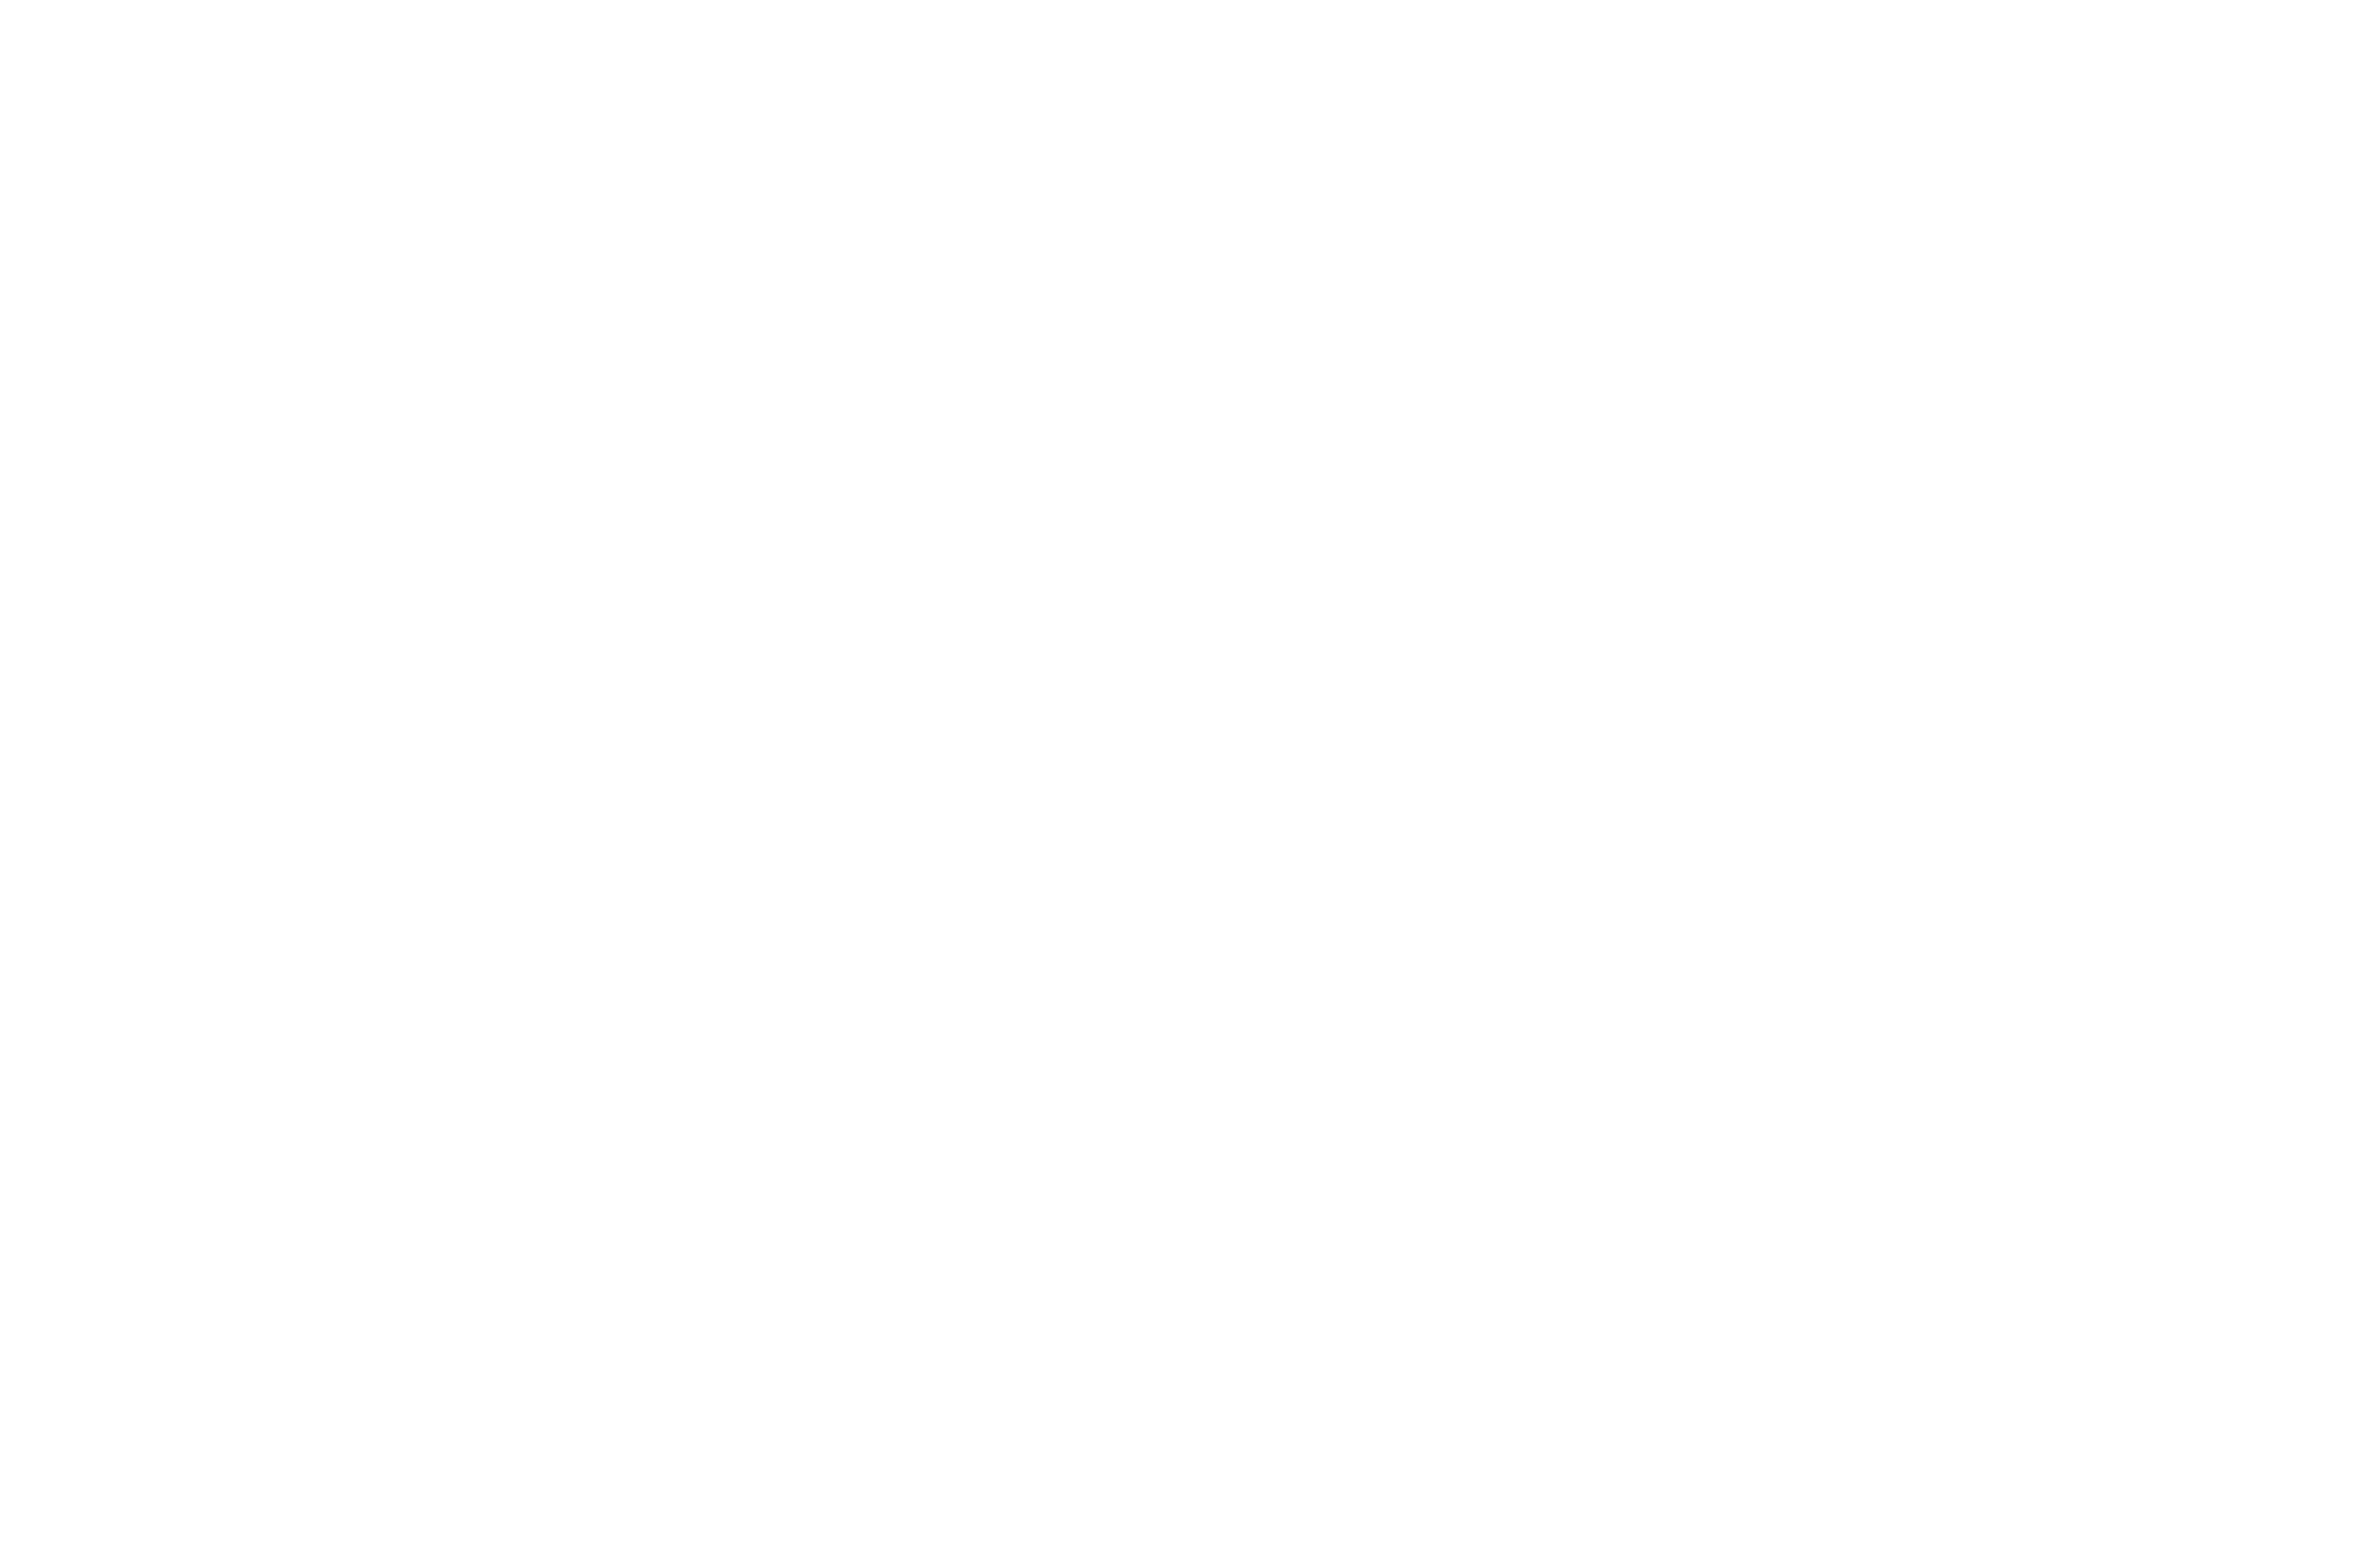 Best Horror Film-Offshore Film Festival LOVED